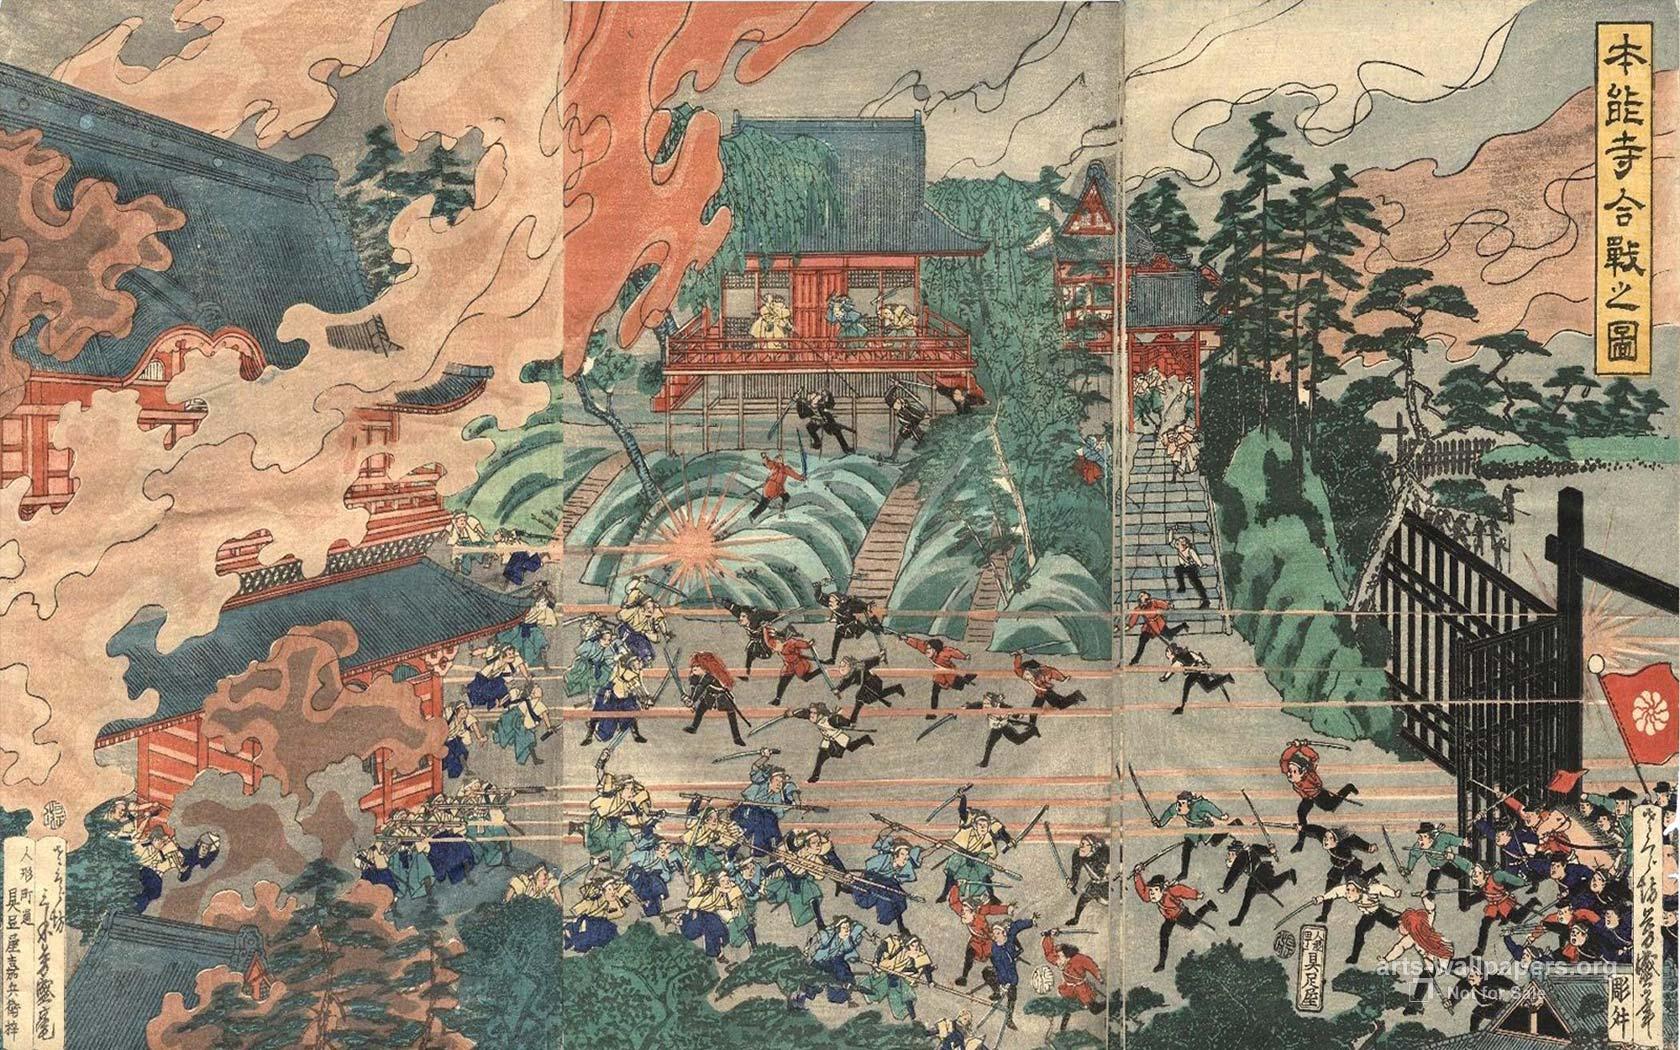 1680 x 1050 · jpeg - Japanese Art Wallpapers - Wallpaper Cave